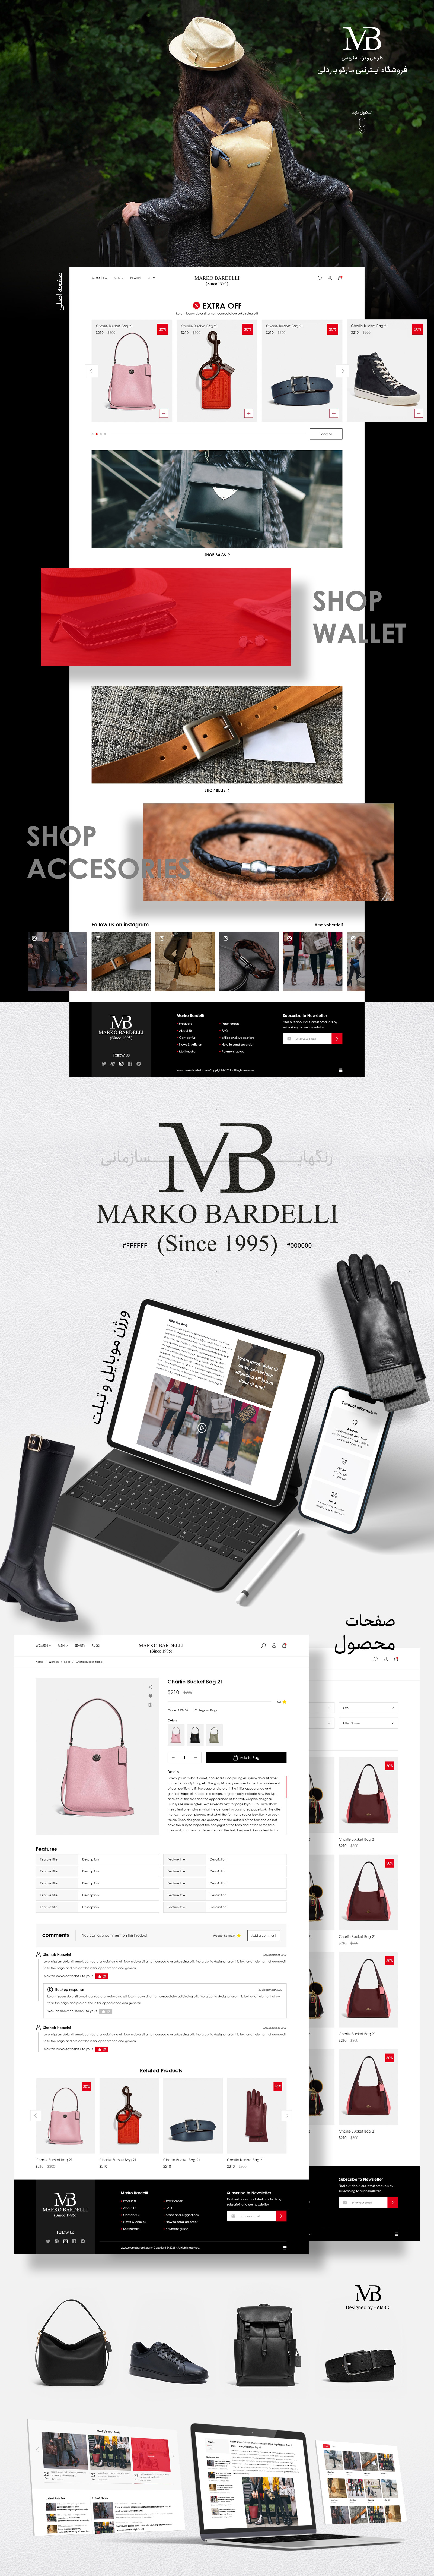 فروشگاه اینترنتی Marko Bardelli